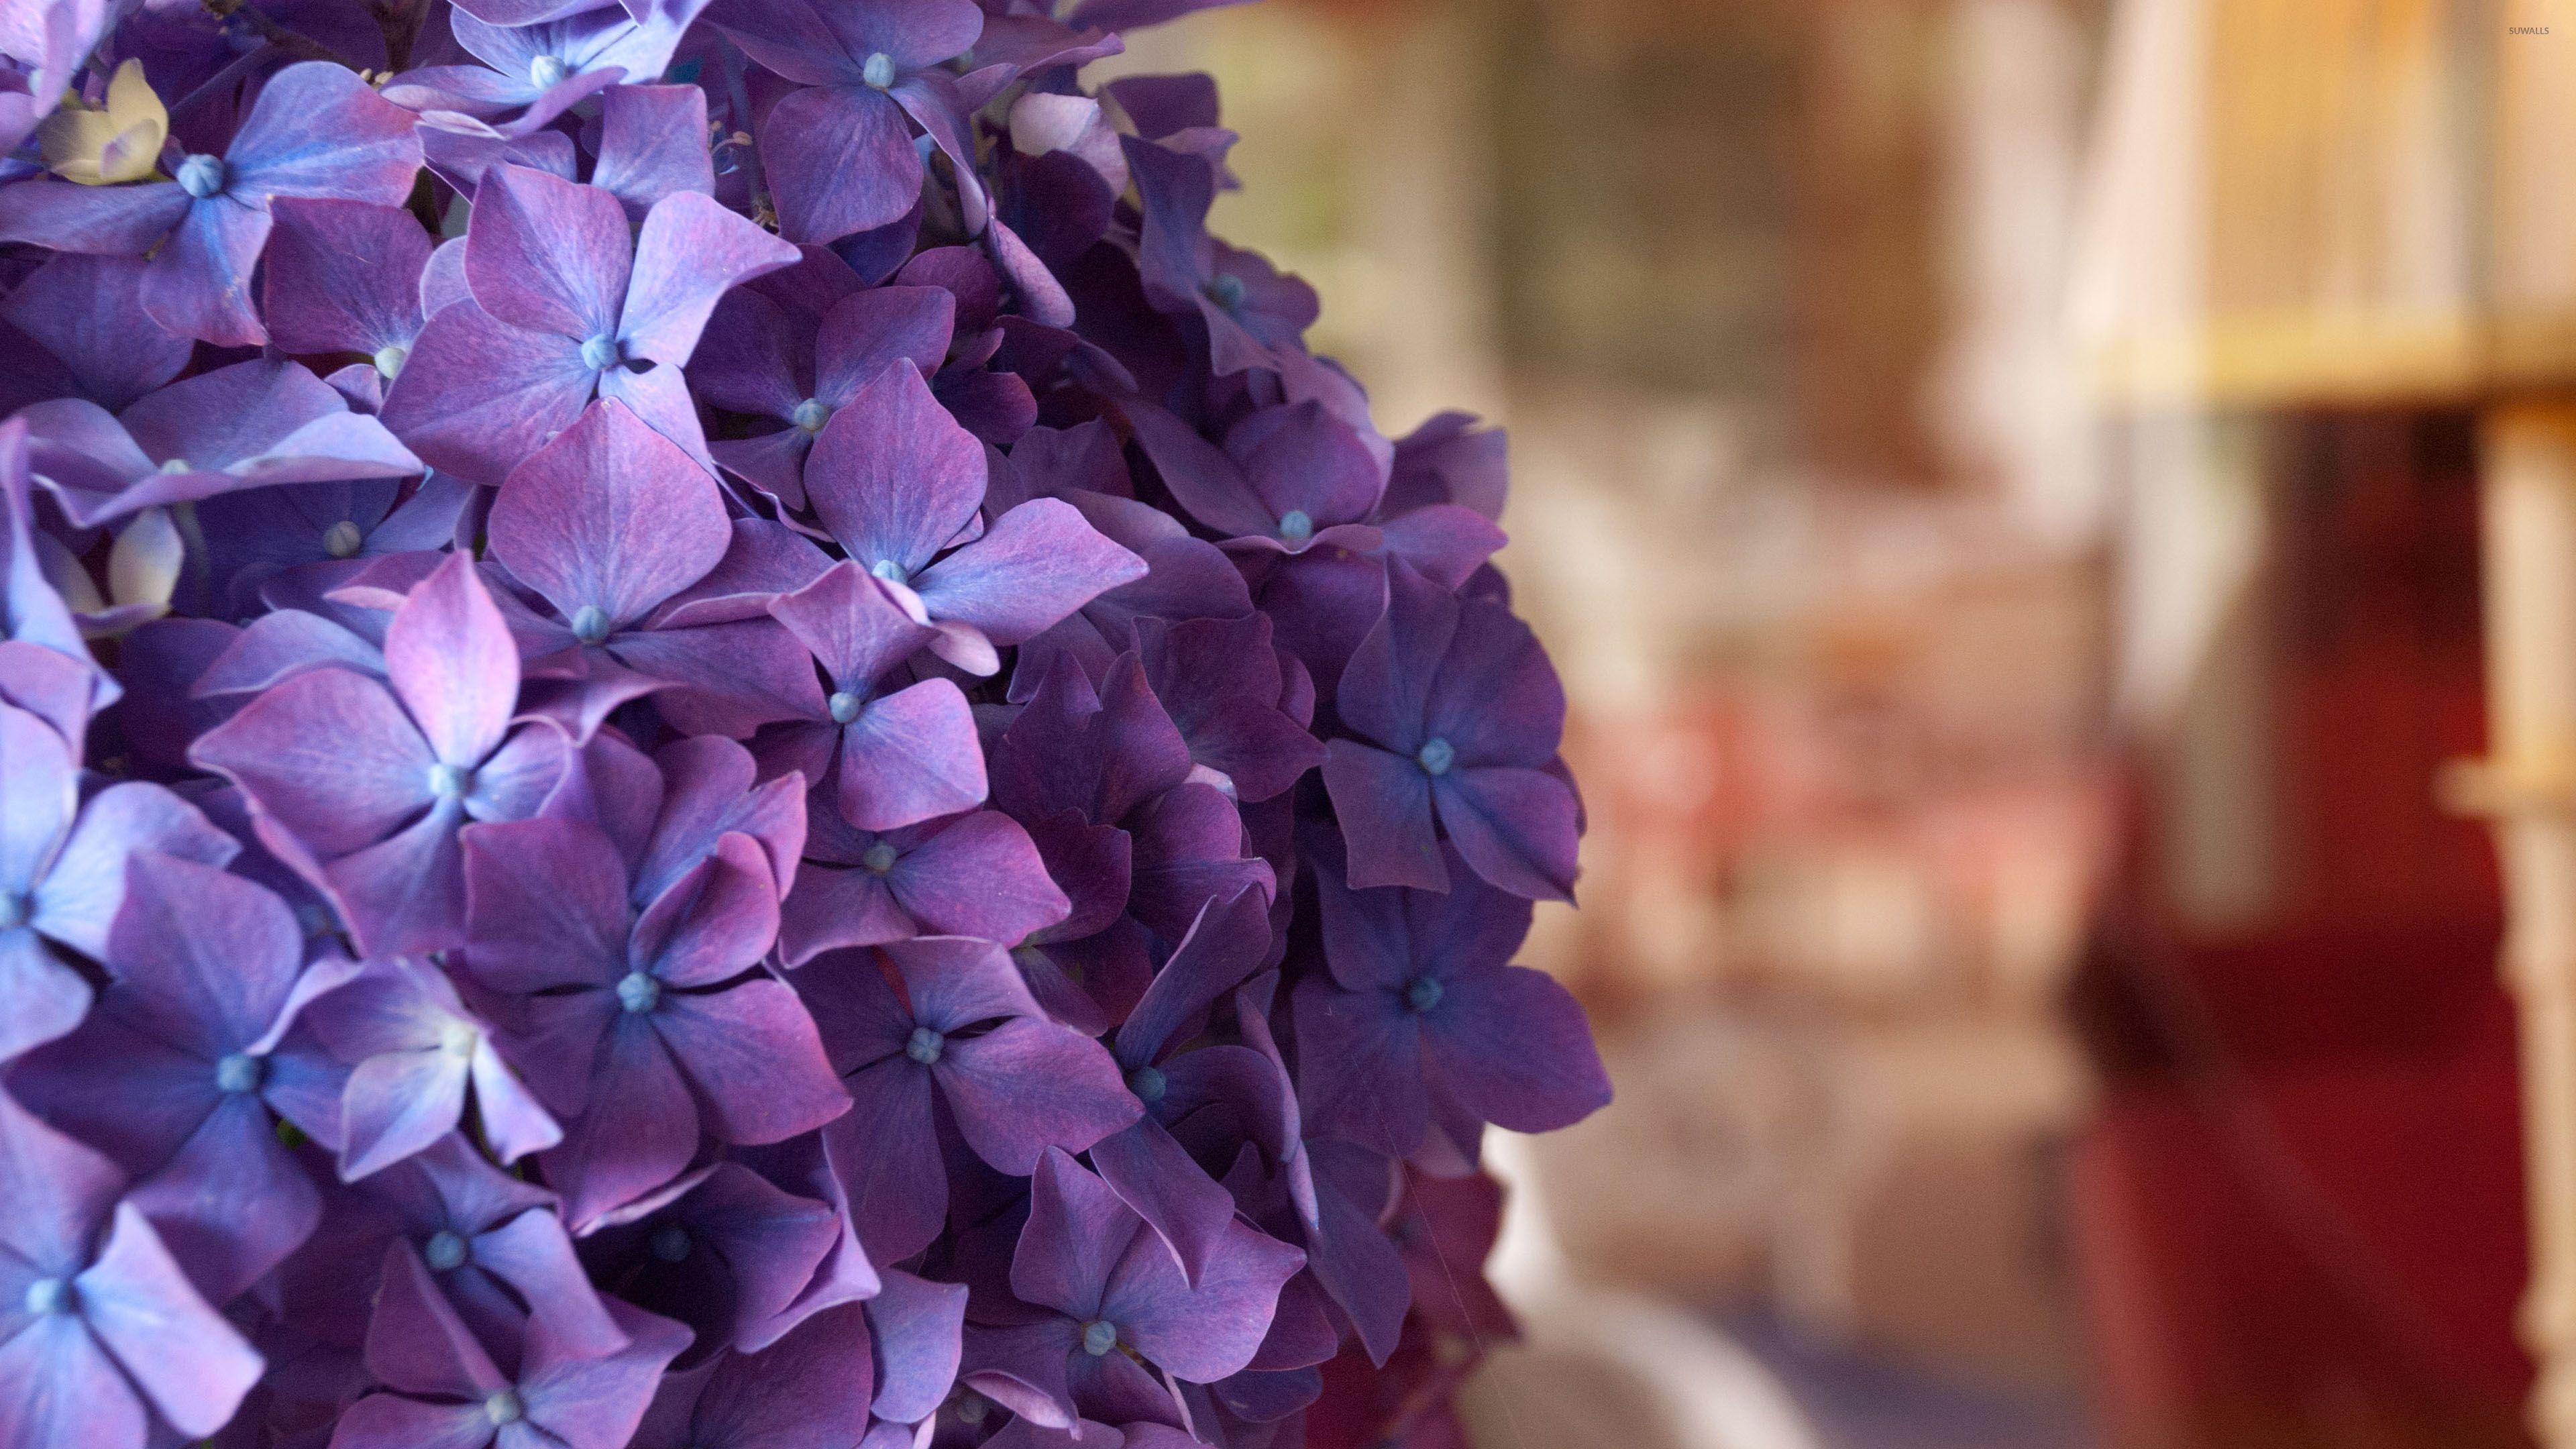 Hoa cẩm tú cầu tím là loài hoa đẹp mê hoặc với những cánh hoa mềm mại màu tím nhạt. Nhìn thấy chúng, bạn sẽ cảm nhận được sức hút và sự quyến rũ đặc biệt của loài hoa này. Hãy mở xem hình ảnh để thấy tất cả vẻ đẹp của hoa cẩm tú cầu tím.